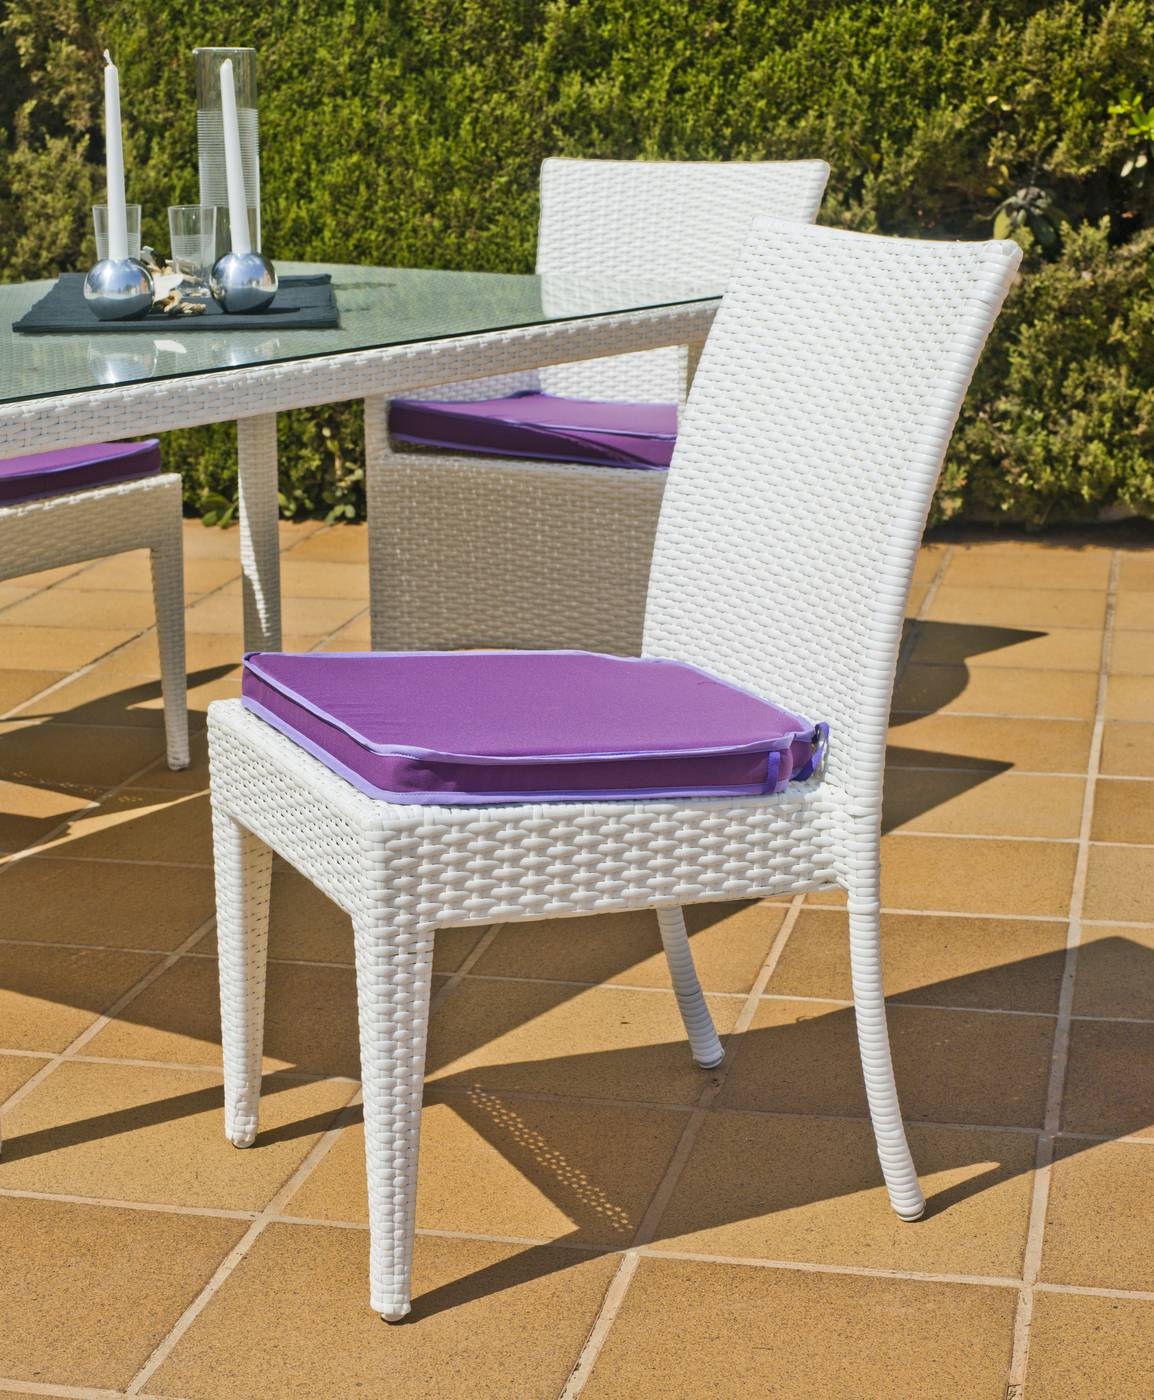 Conjunto Ratán Sint. Villa-150 - Conjunto de jardín: mesa de 150 cm. con tapa de cristal templado y 4 sillas con cojines